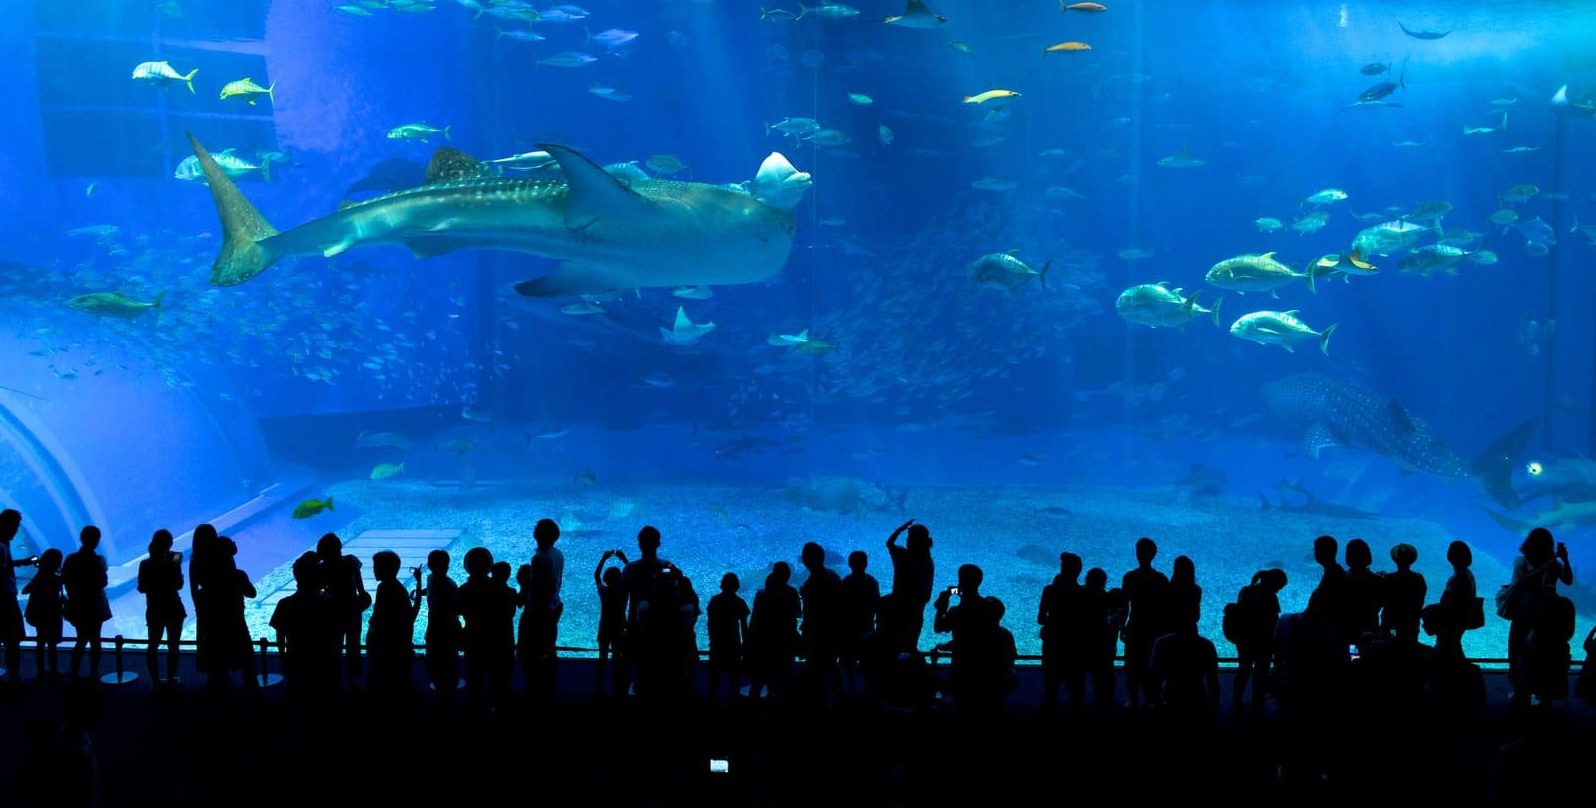 Crowds at a tank at Okinawa Churaumi Aquarium